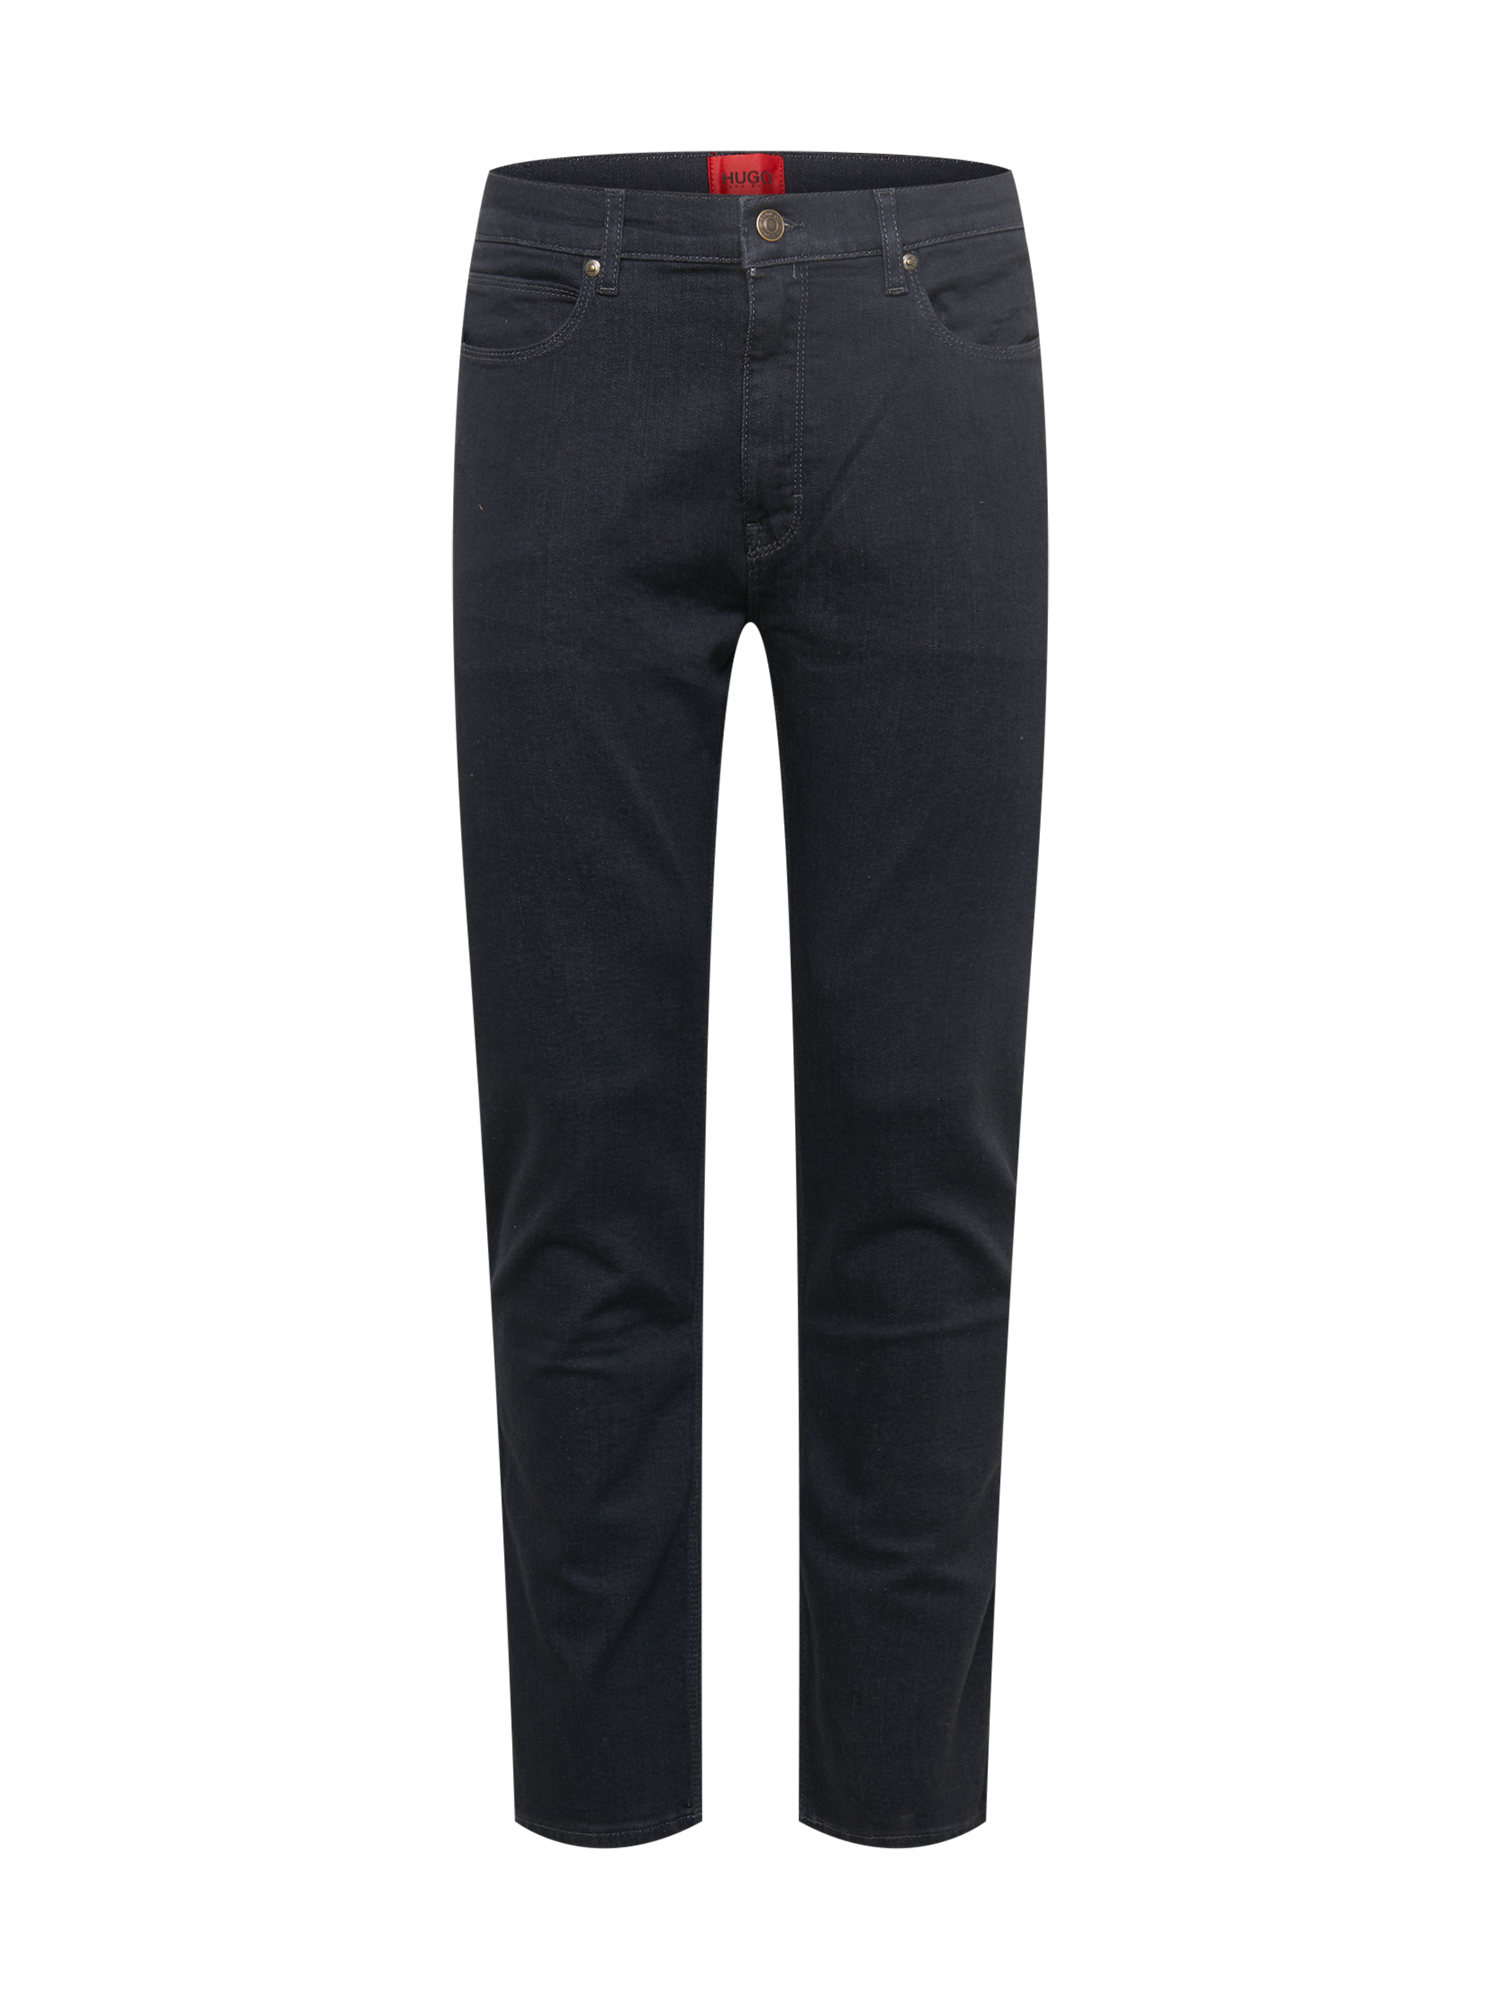 Mężczyźni Odzież HUGO Jeansy 708 w kolorze Czarnym 